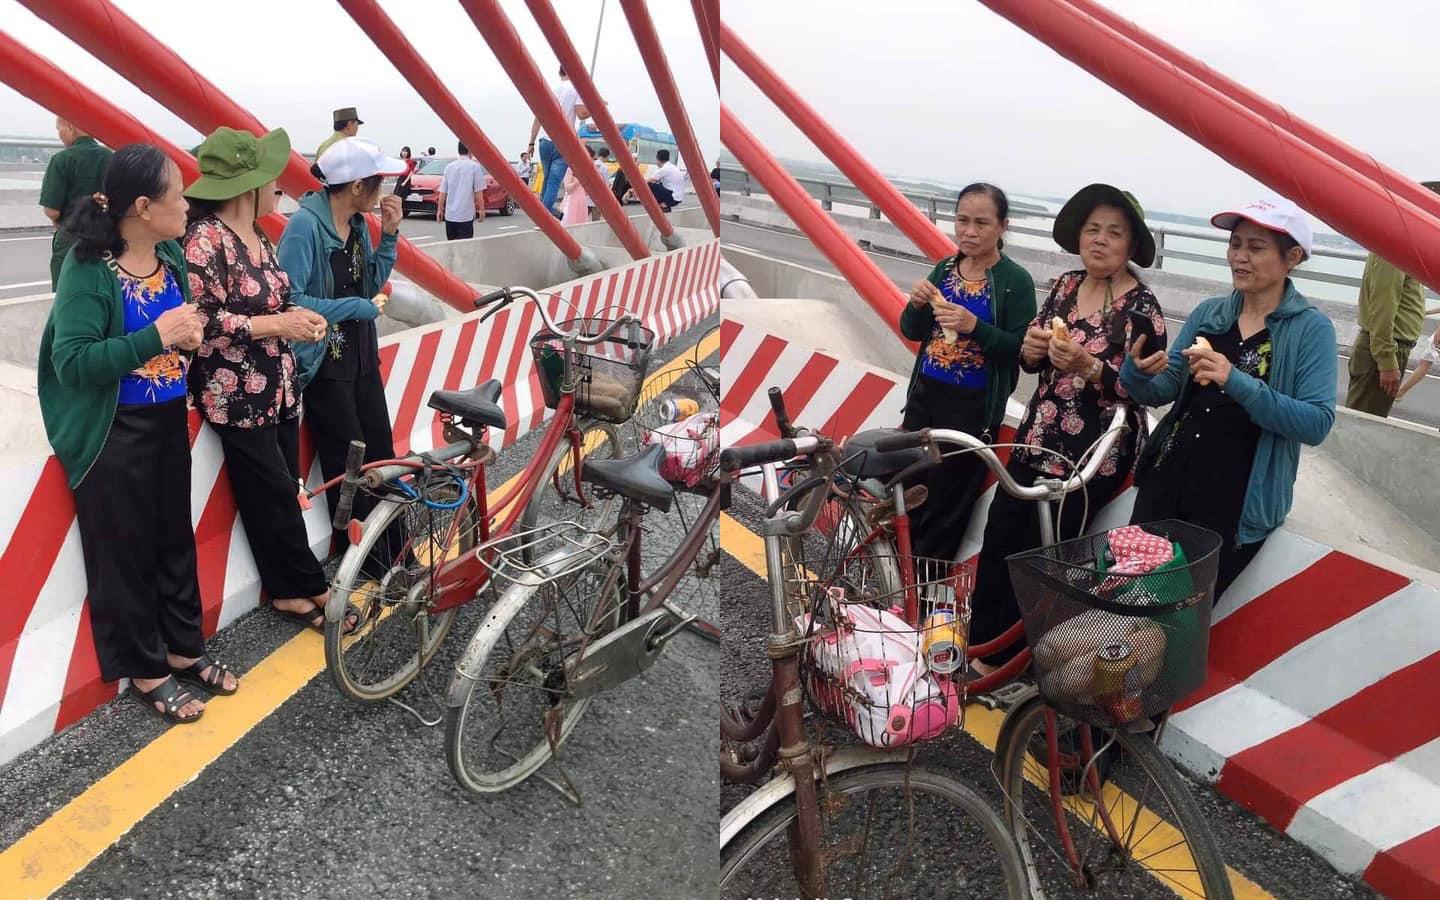 3 cụ bà phượt 60km bằng xe đạp để ngắm cây cầu dài nhất Bắc Trung Bộ - 1